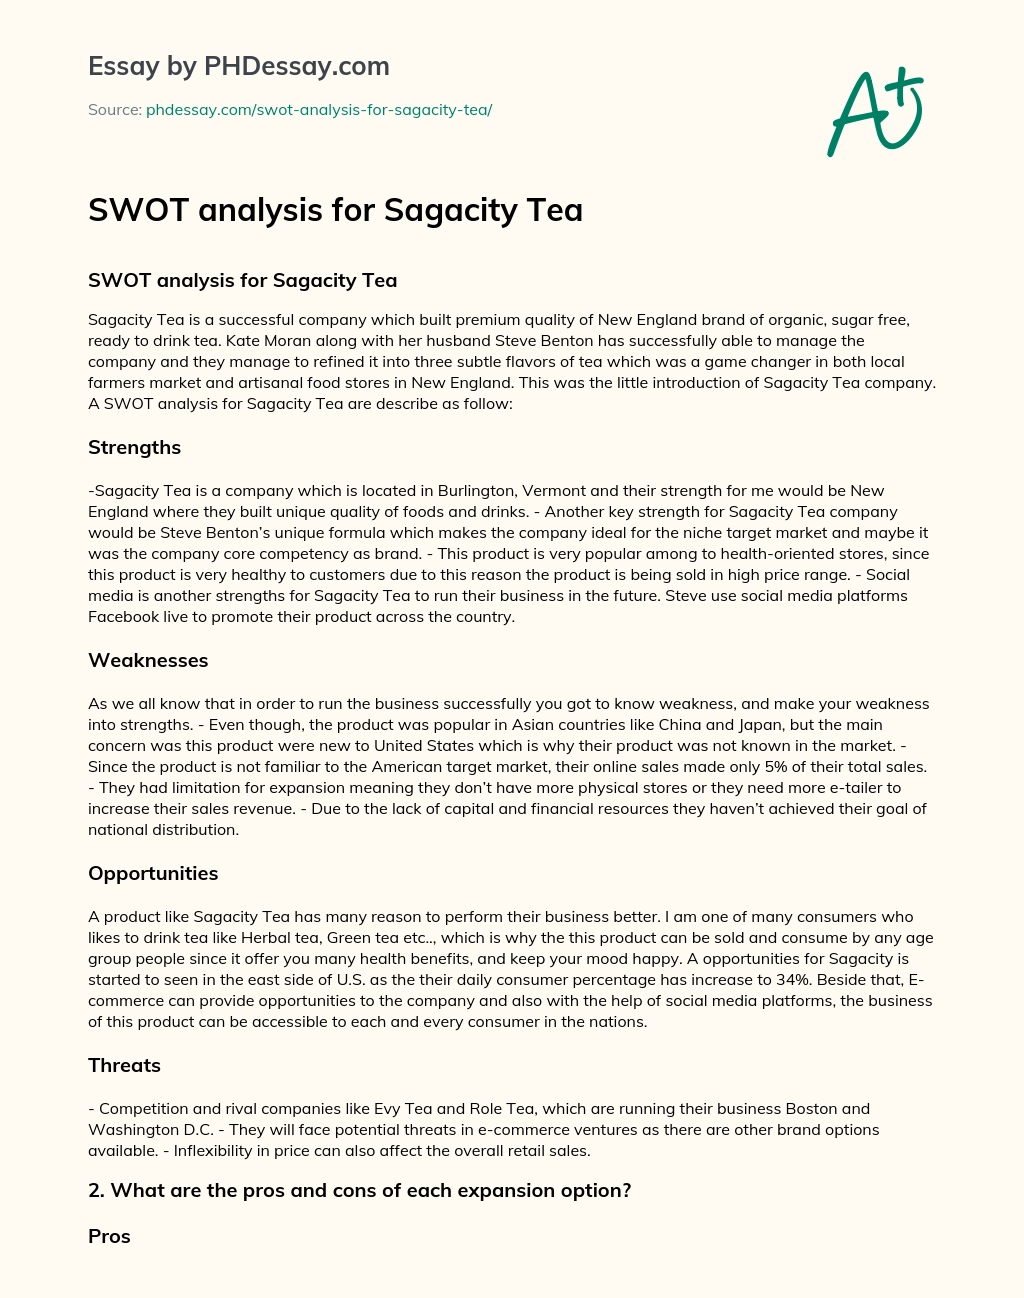 SWOT analysis for Sagacity Tea essay